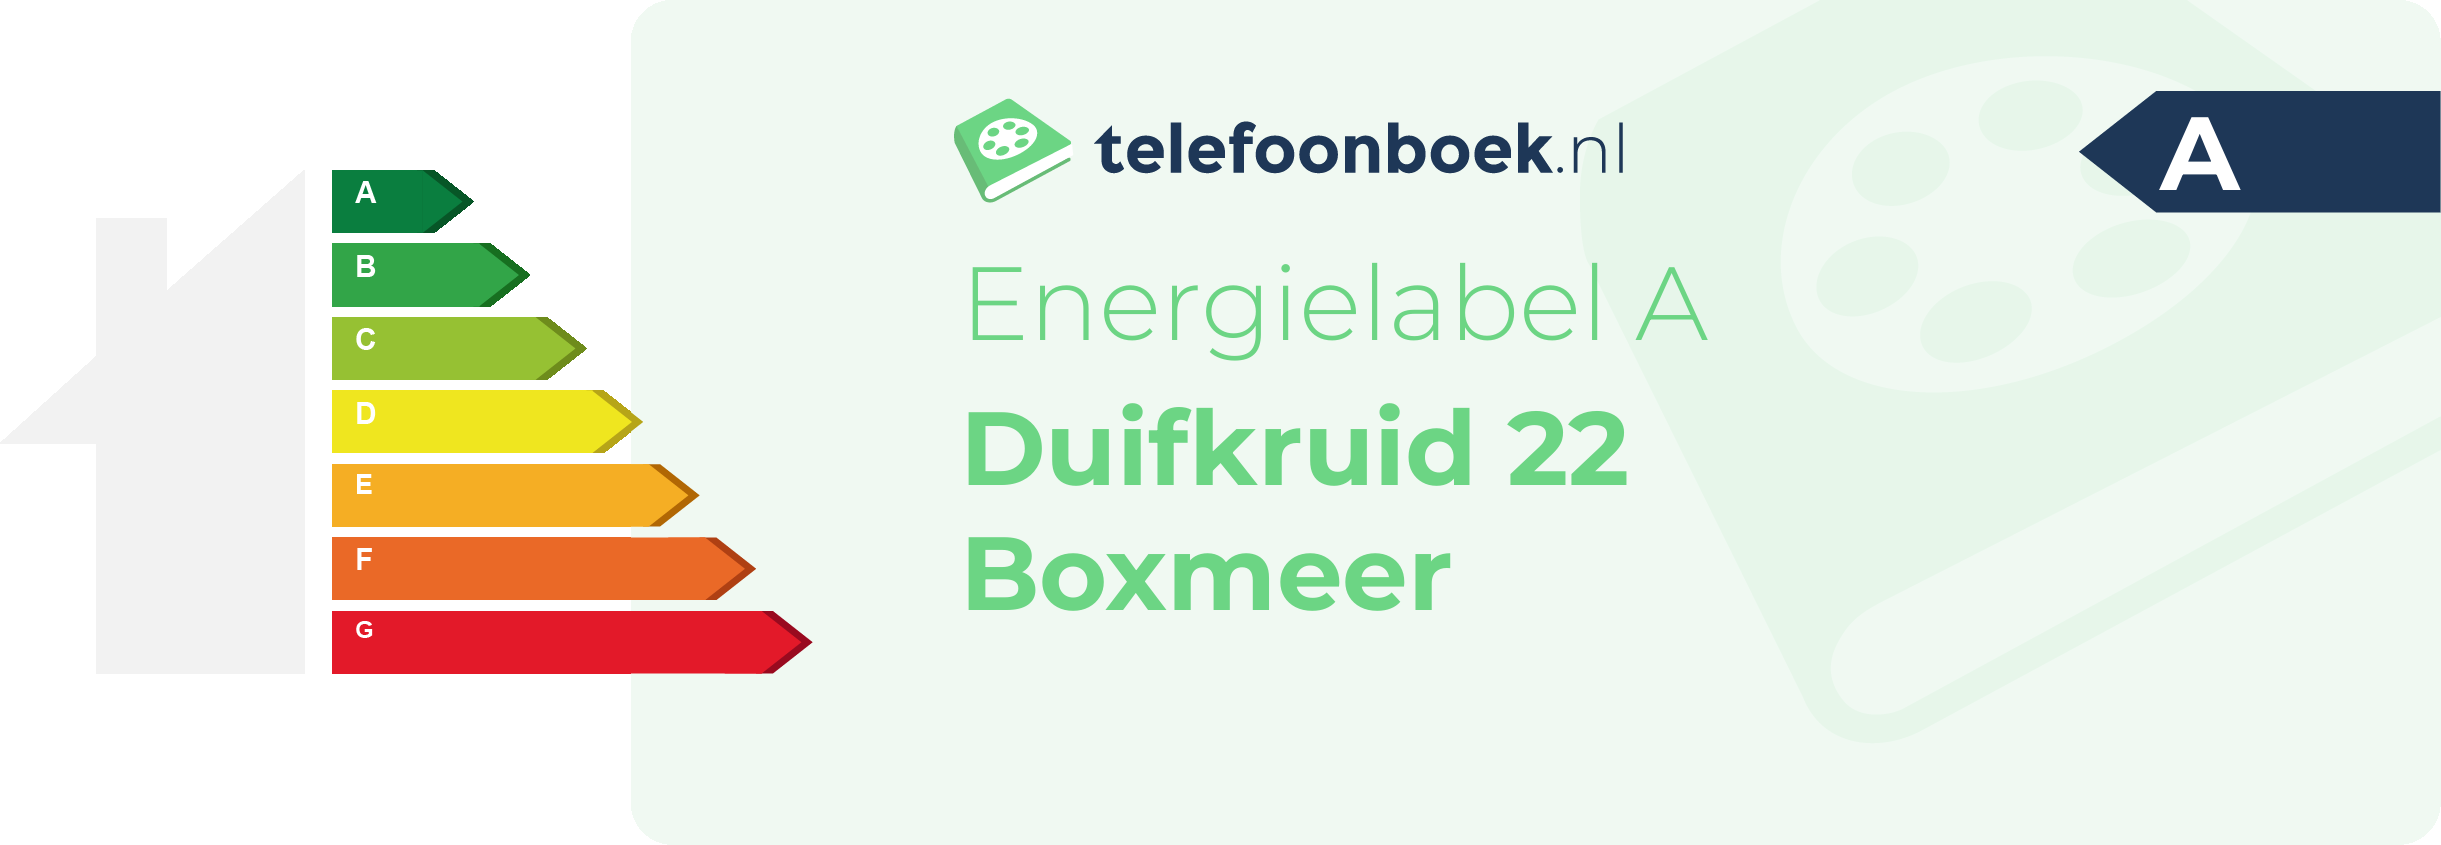 Energielabel Duifkruid 22 Boxmeer